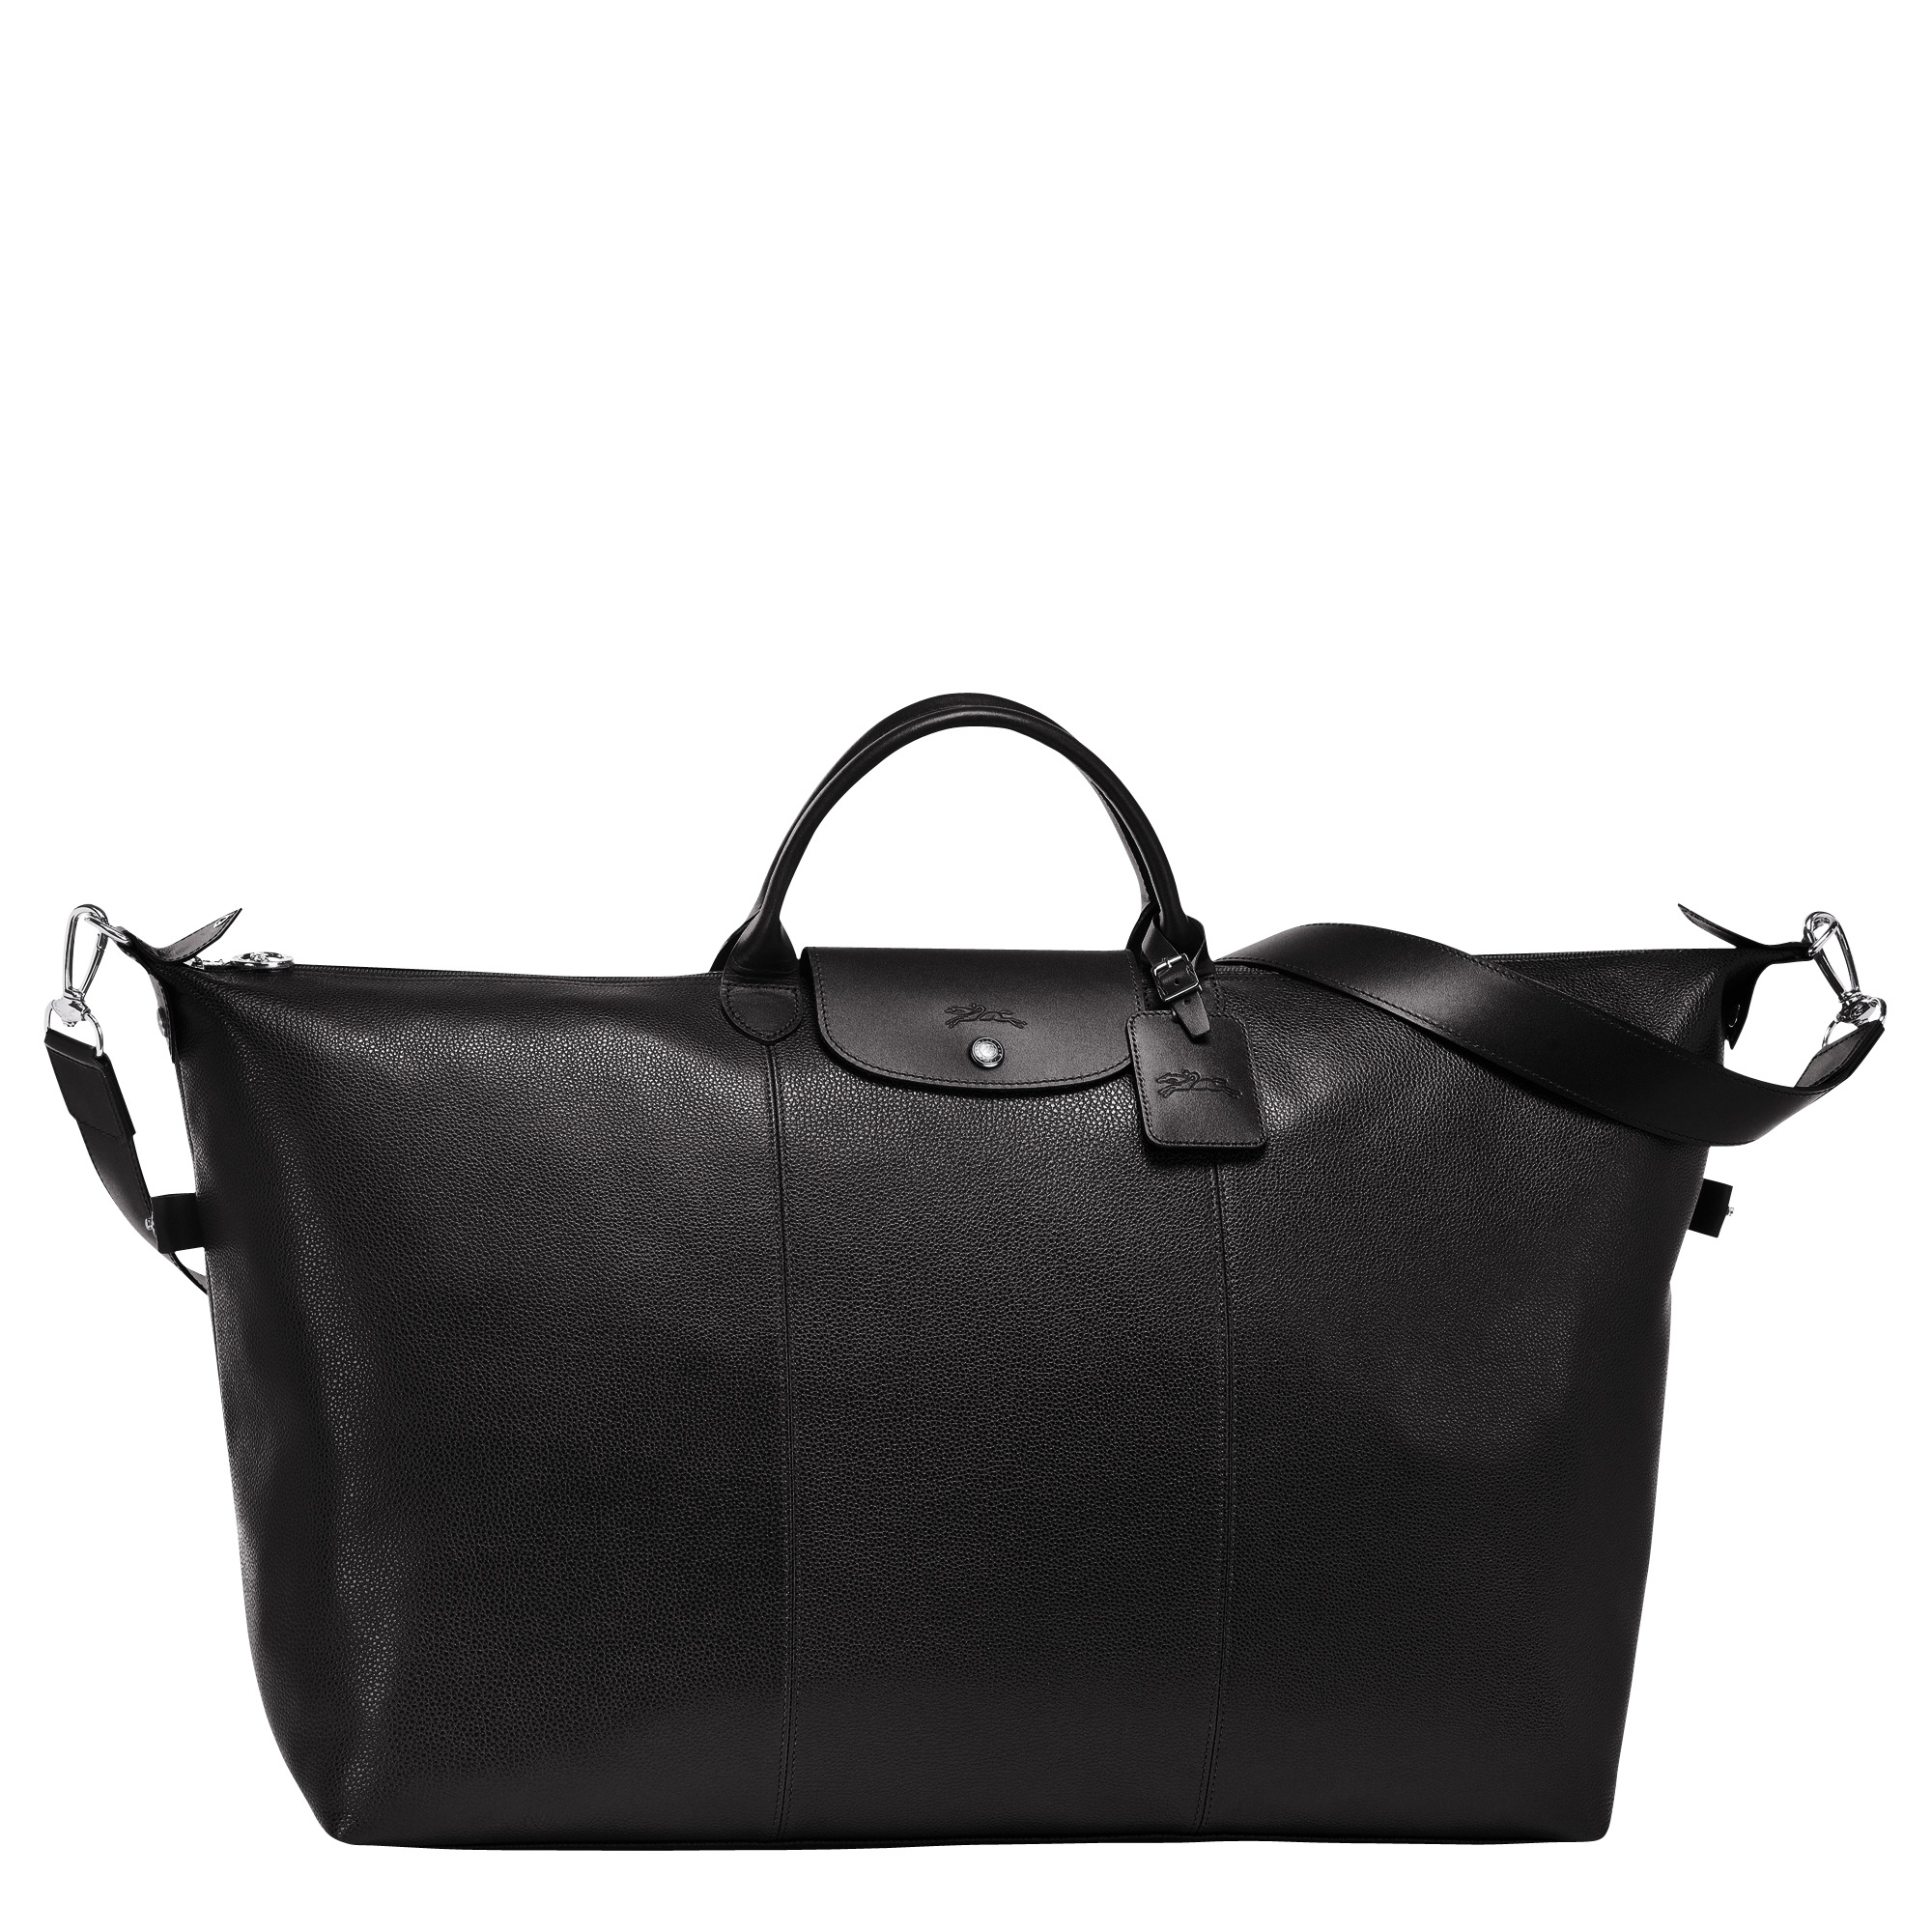 Le Foulonné S Travel bag Black - Leather - 1